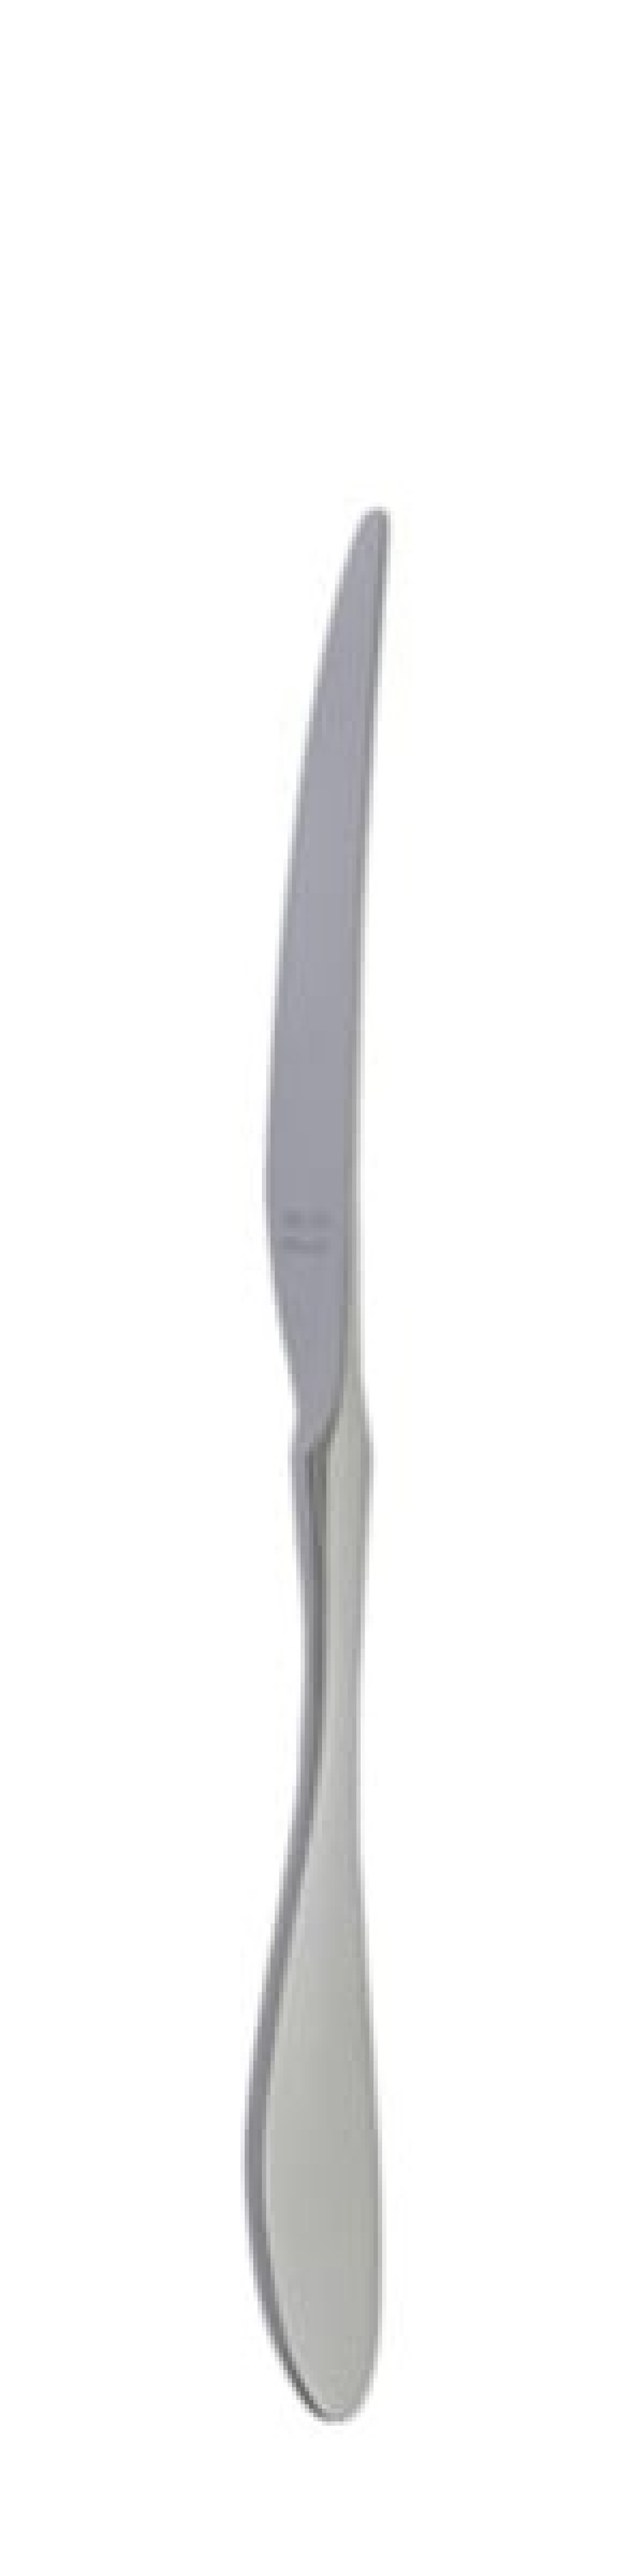 Terra Retro Tafelmesser 239 mm - Solex in der Gruppe Tischgedeck / Besteck / Messer bei The Kitchen Lab (1284-21659)